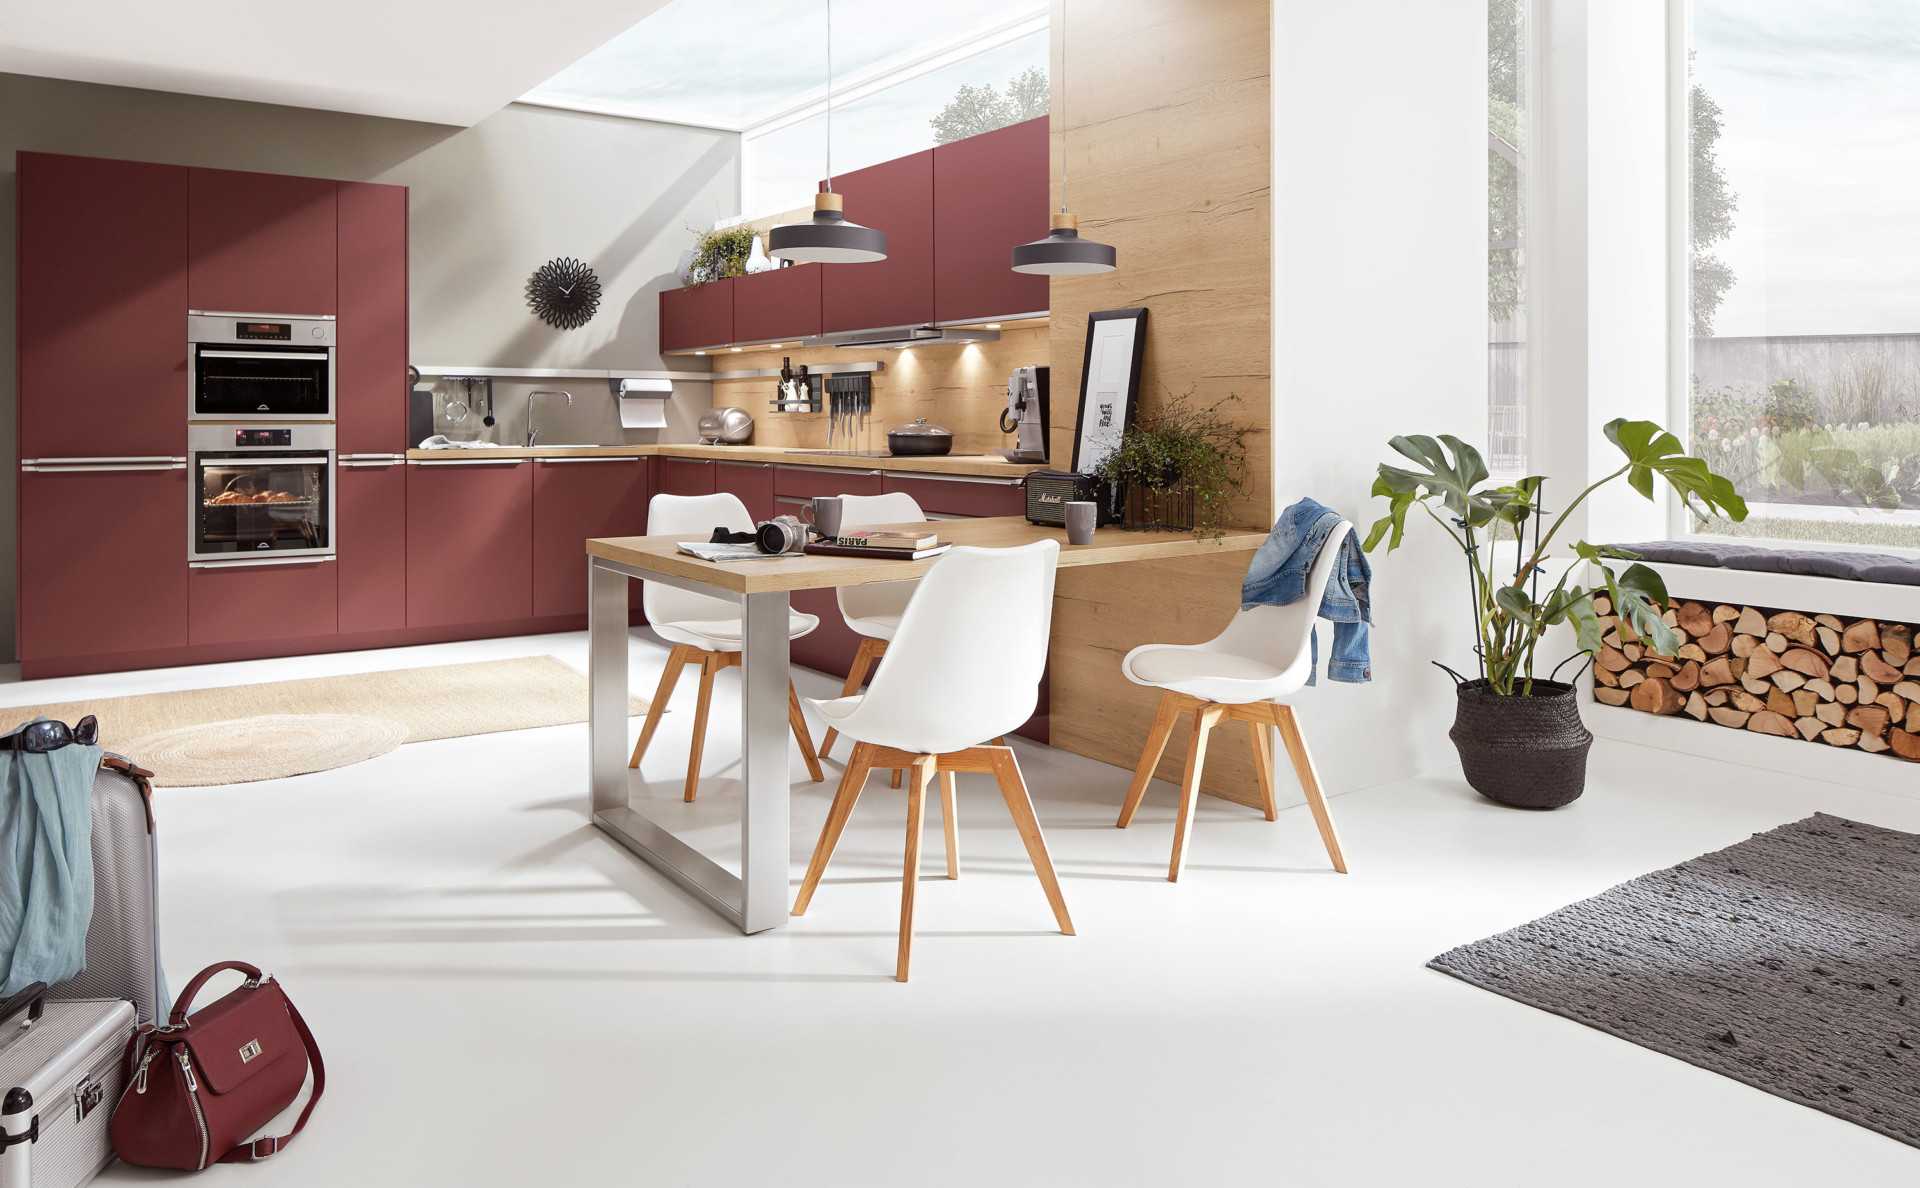 Кухня столовая дизайн интерьер: фото лучших идей, советы по зонированию и отделке кухни-столовой